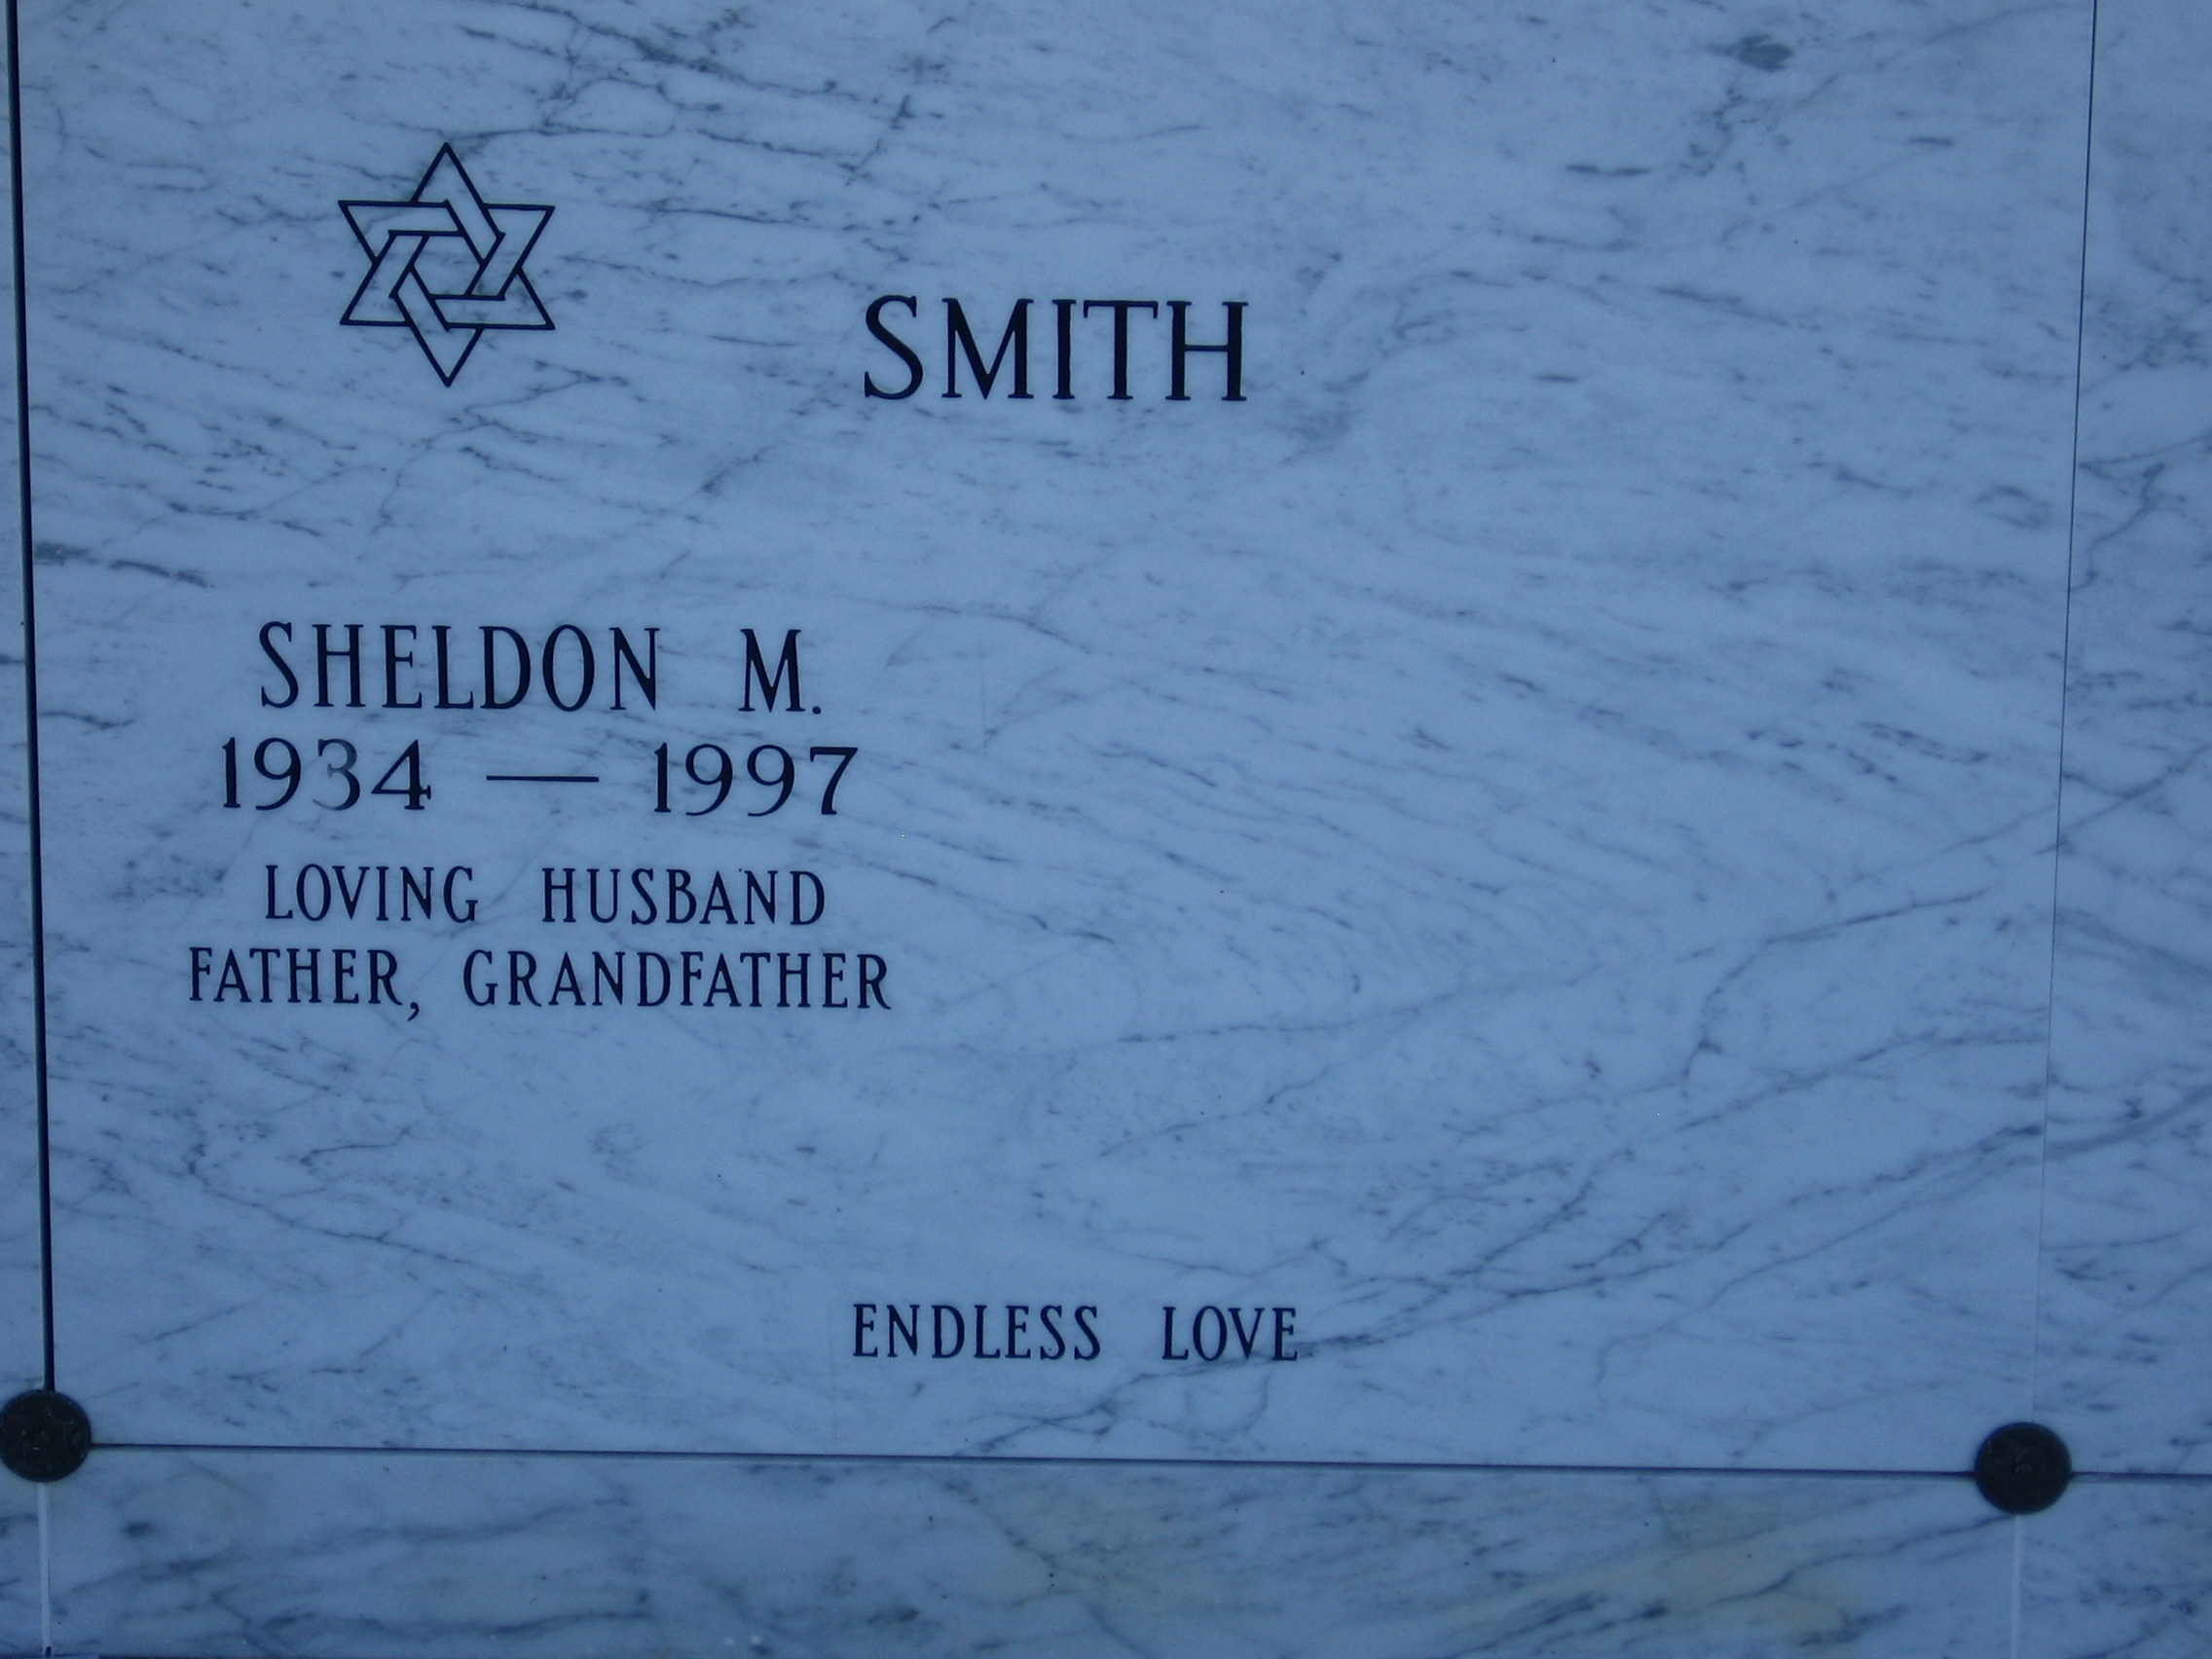 Sheldon M Smith